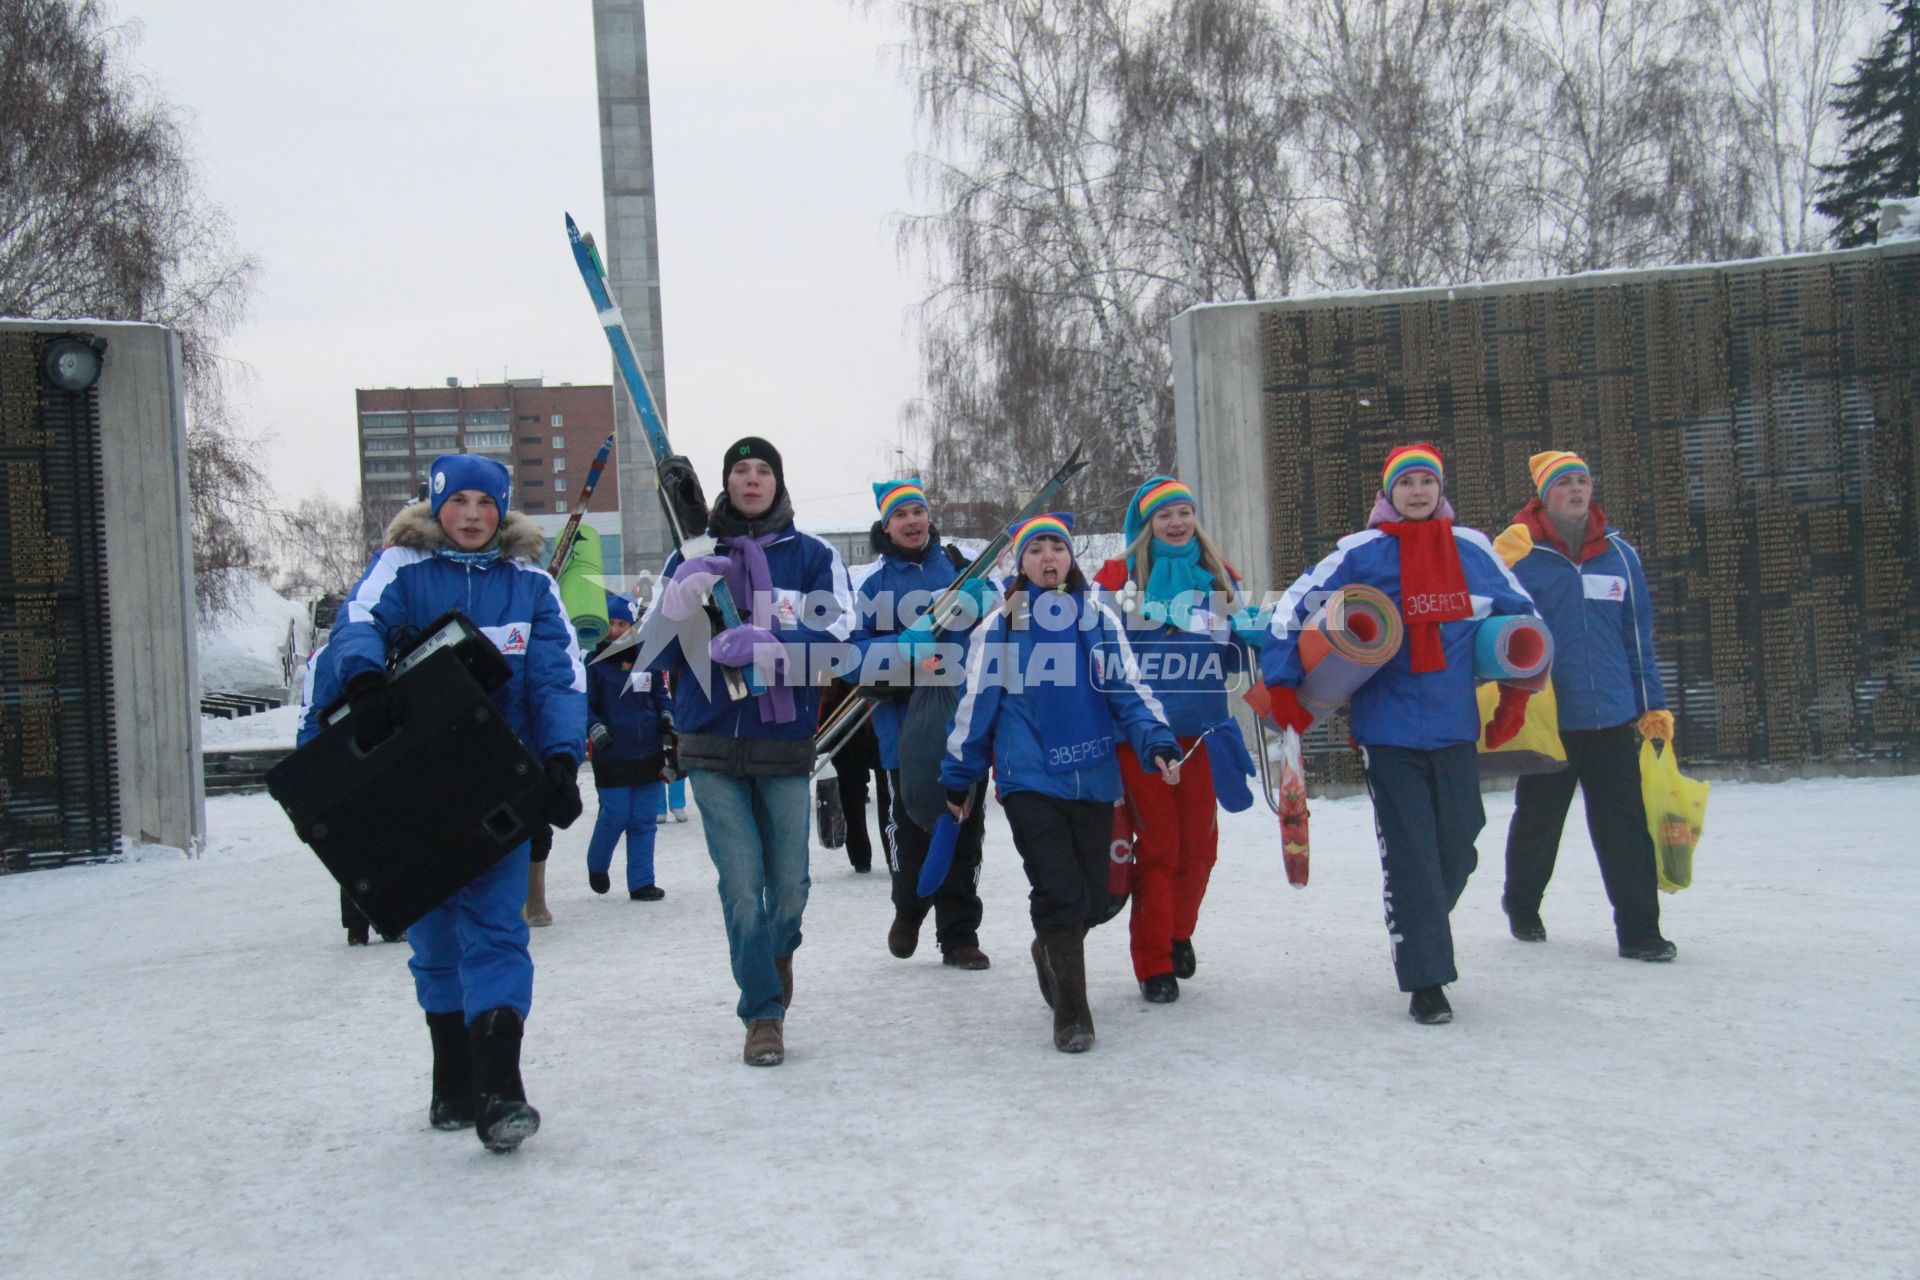 Старт патриотическая акции `Снежный десант`. На снимке: группа молодых людей в ярких костюмах с походными атрибутами: палатка, полиуретановый коврик.